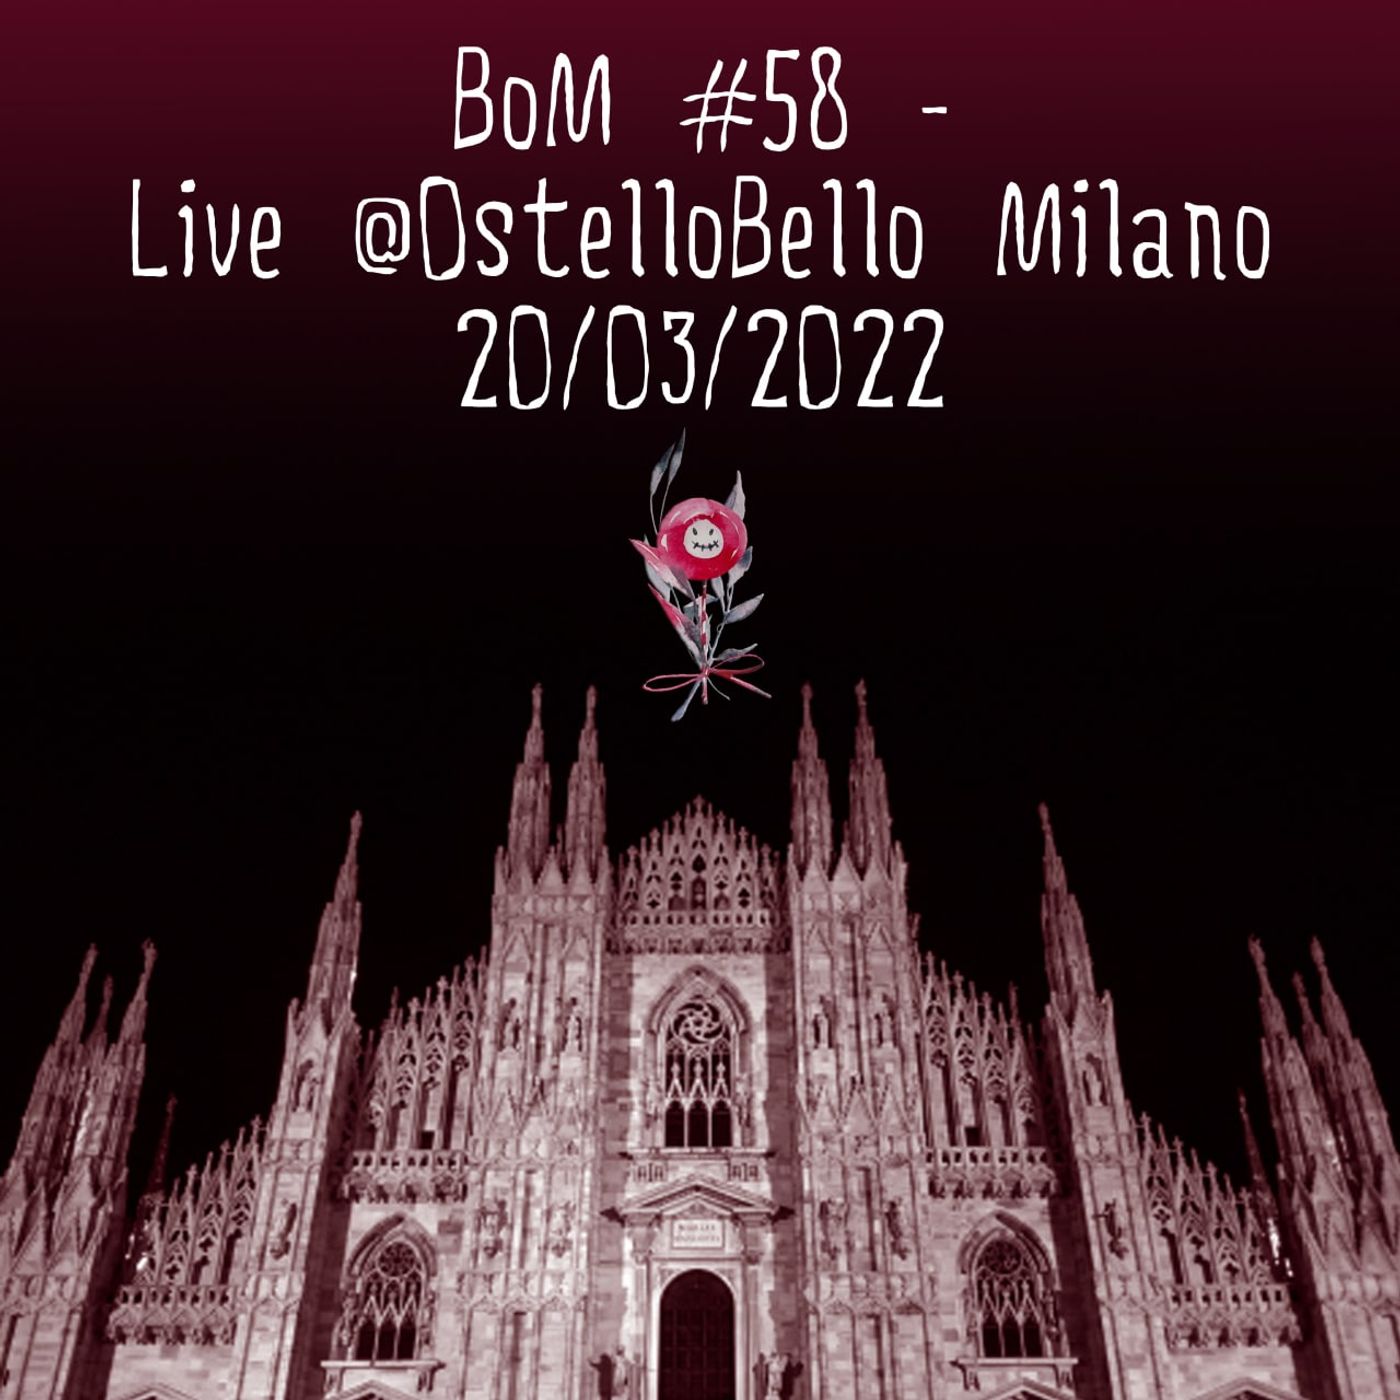 #58 - Live @ Ostello Bello Milano